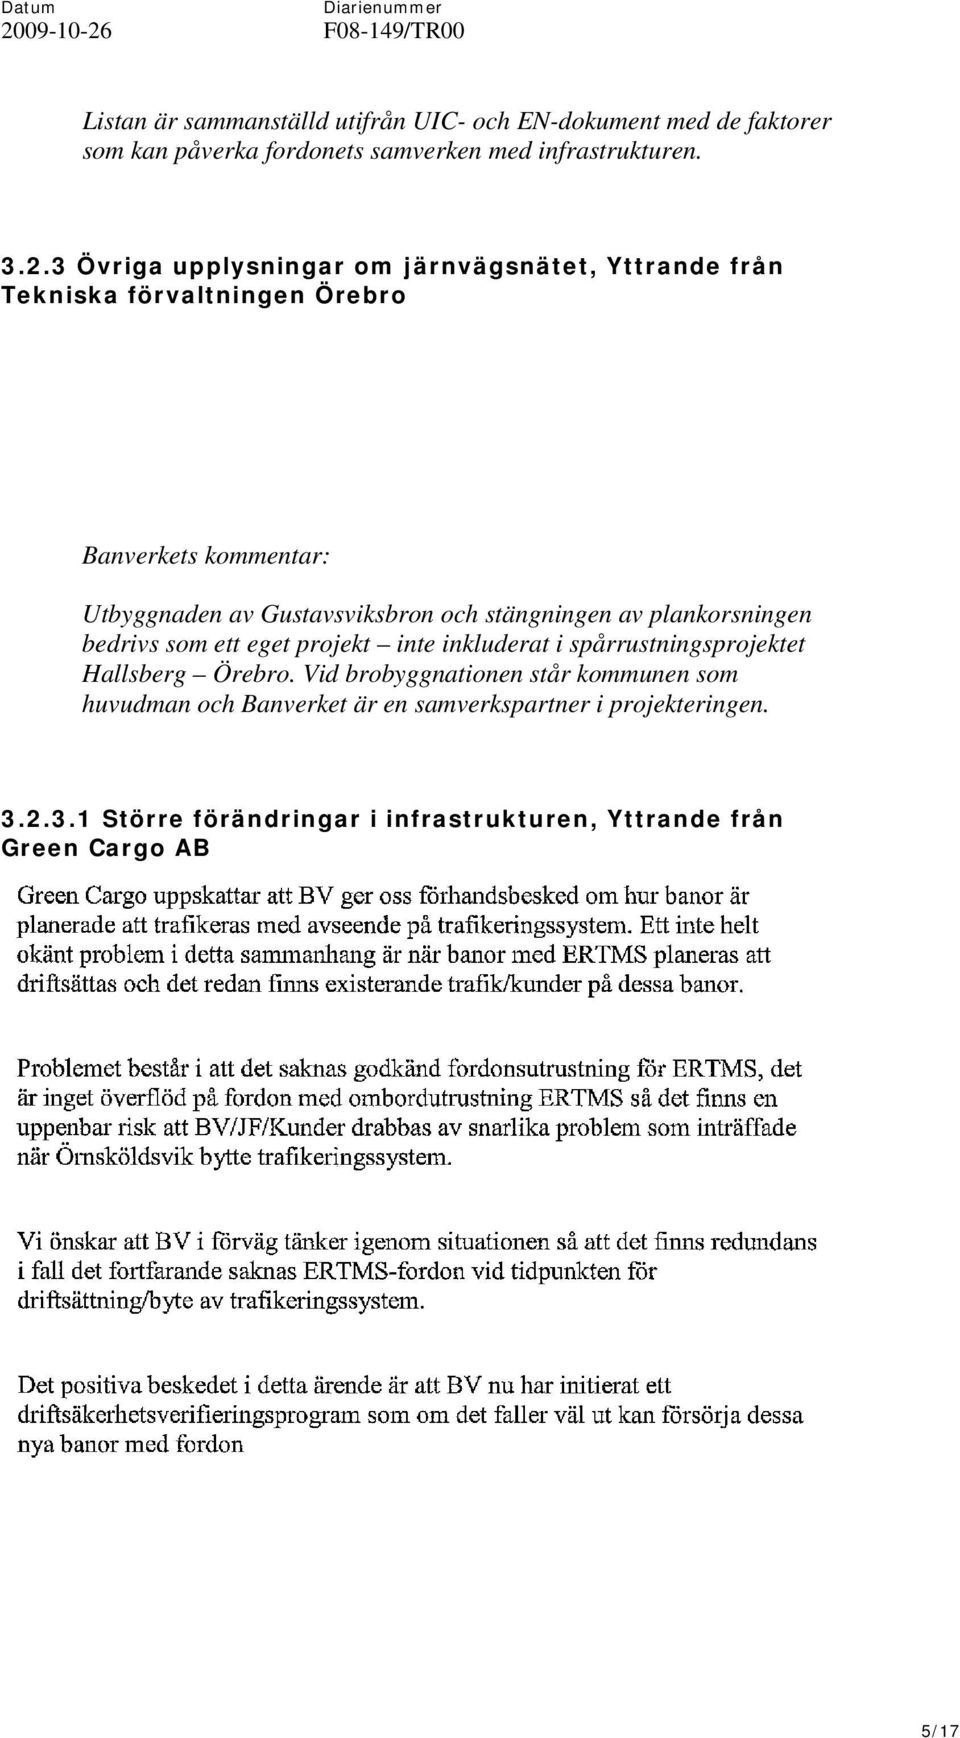 plankorsningen bedrivs som ett eget projekt inte inkluderat i spårrustningsprojektet Hallsberg Örebro.